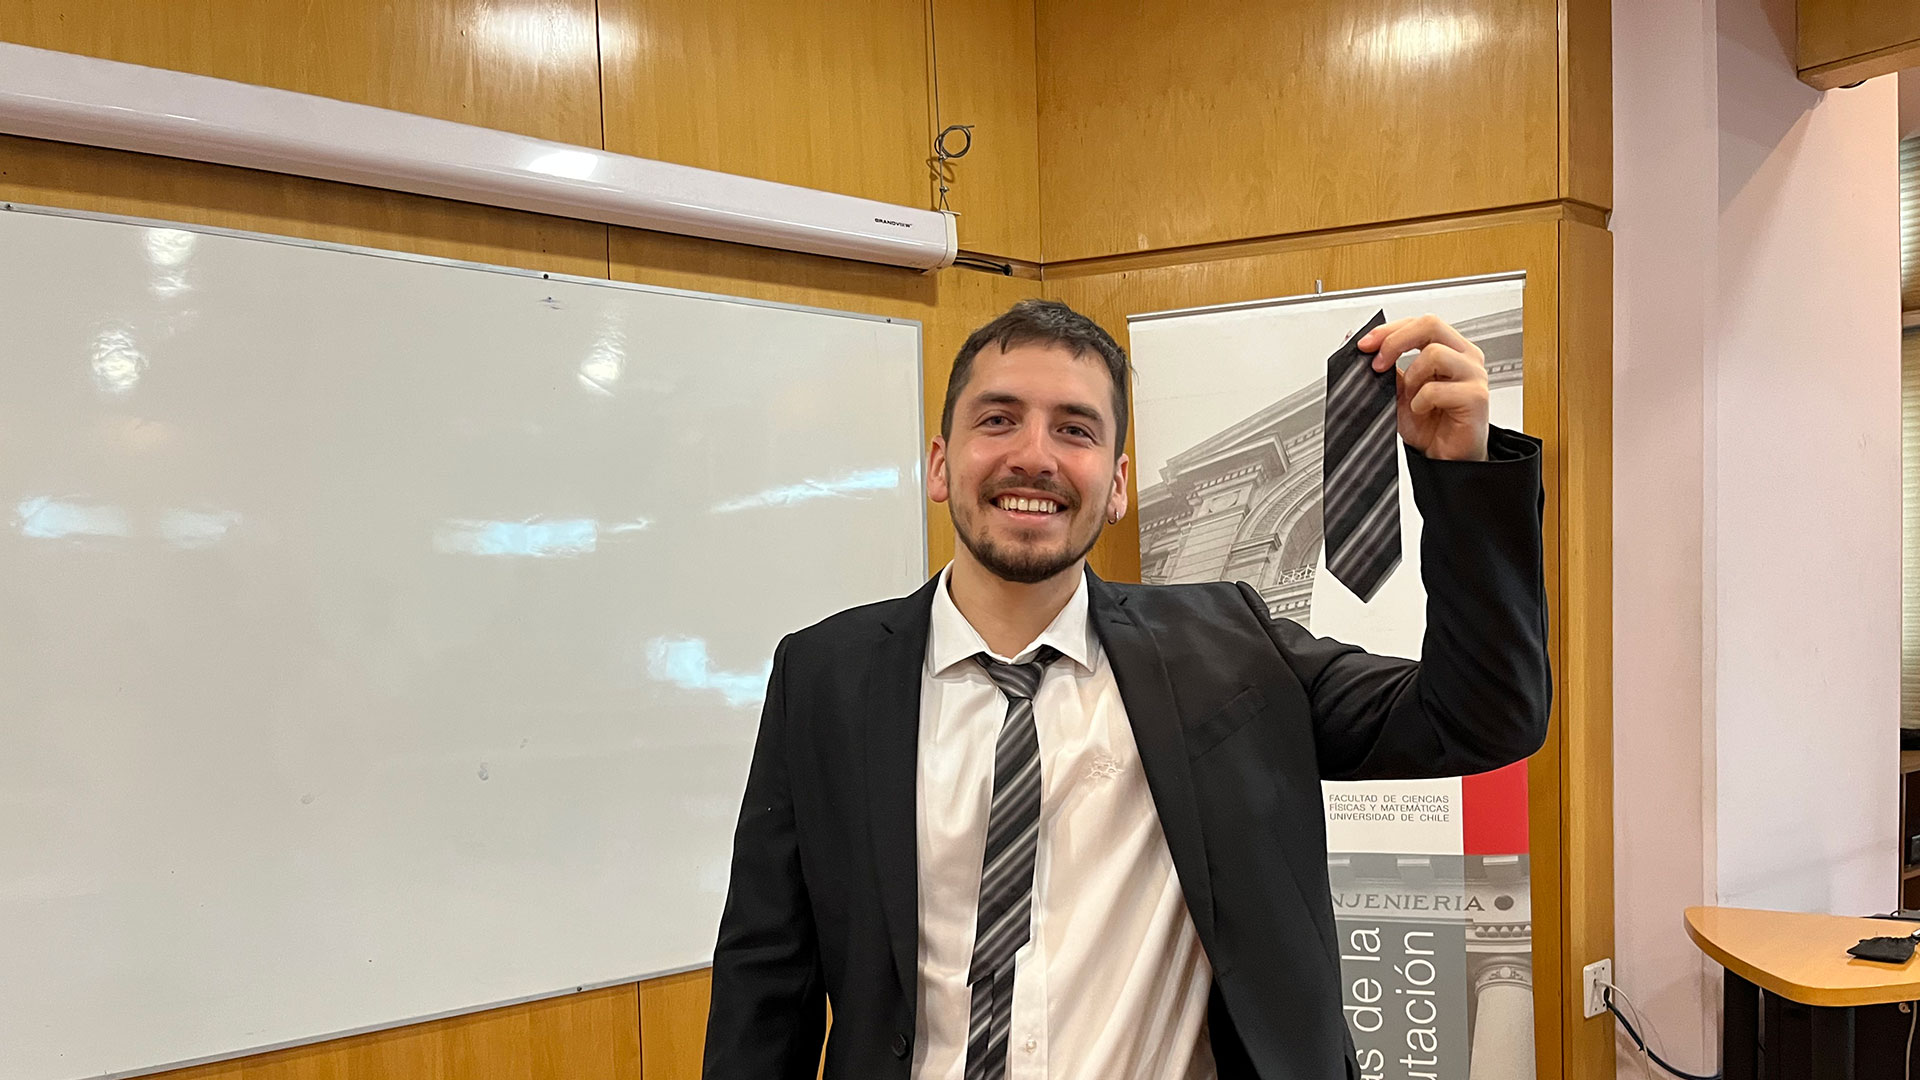 ¡Felicitaciones Matías Montagna, nuevo ingeniero civil en computación!